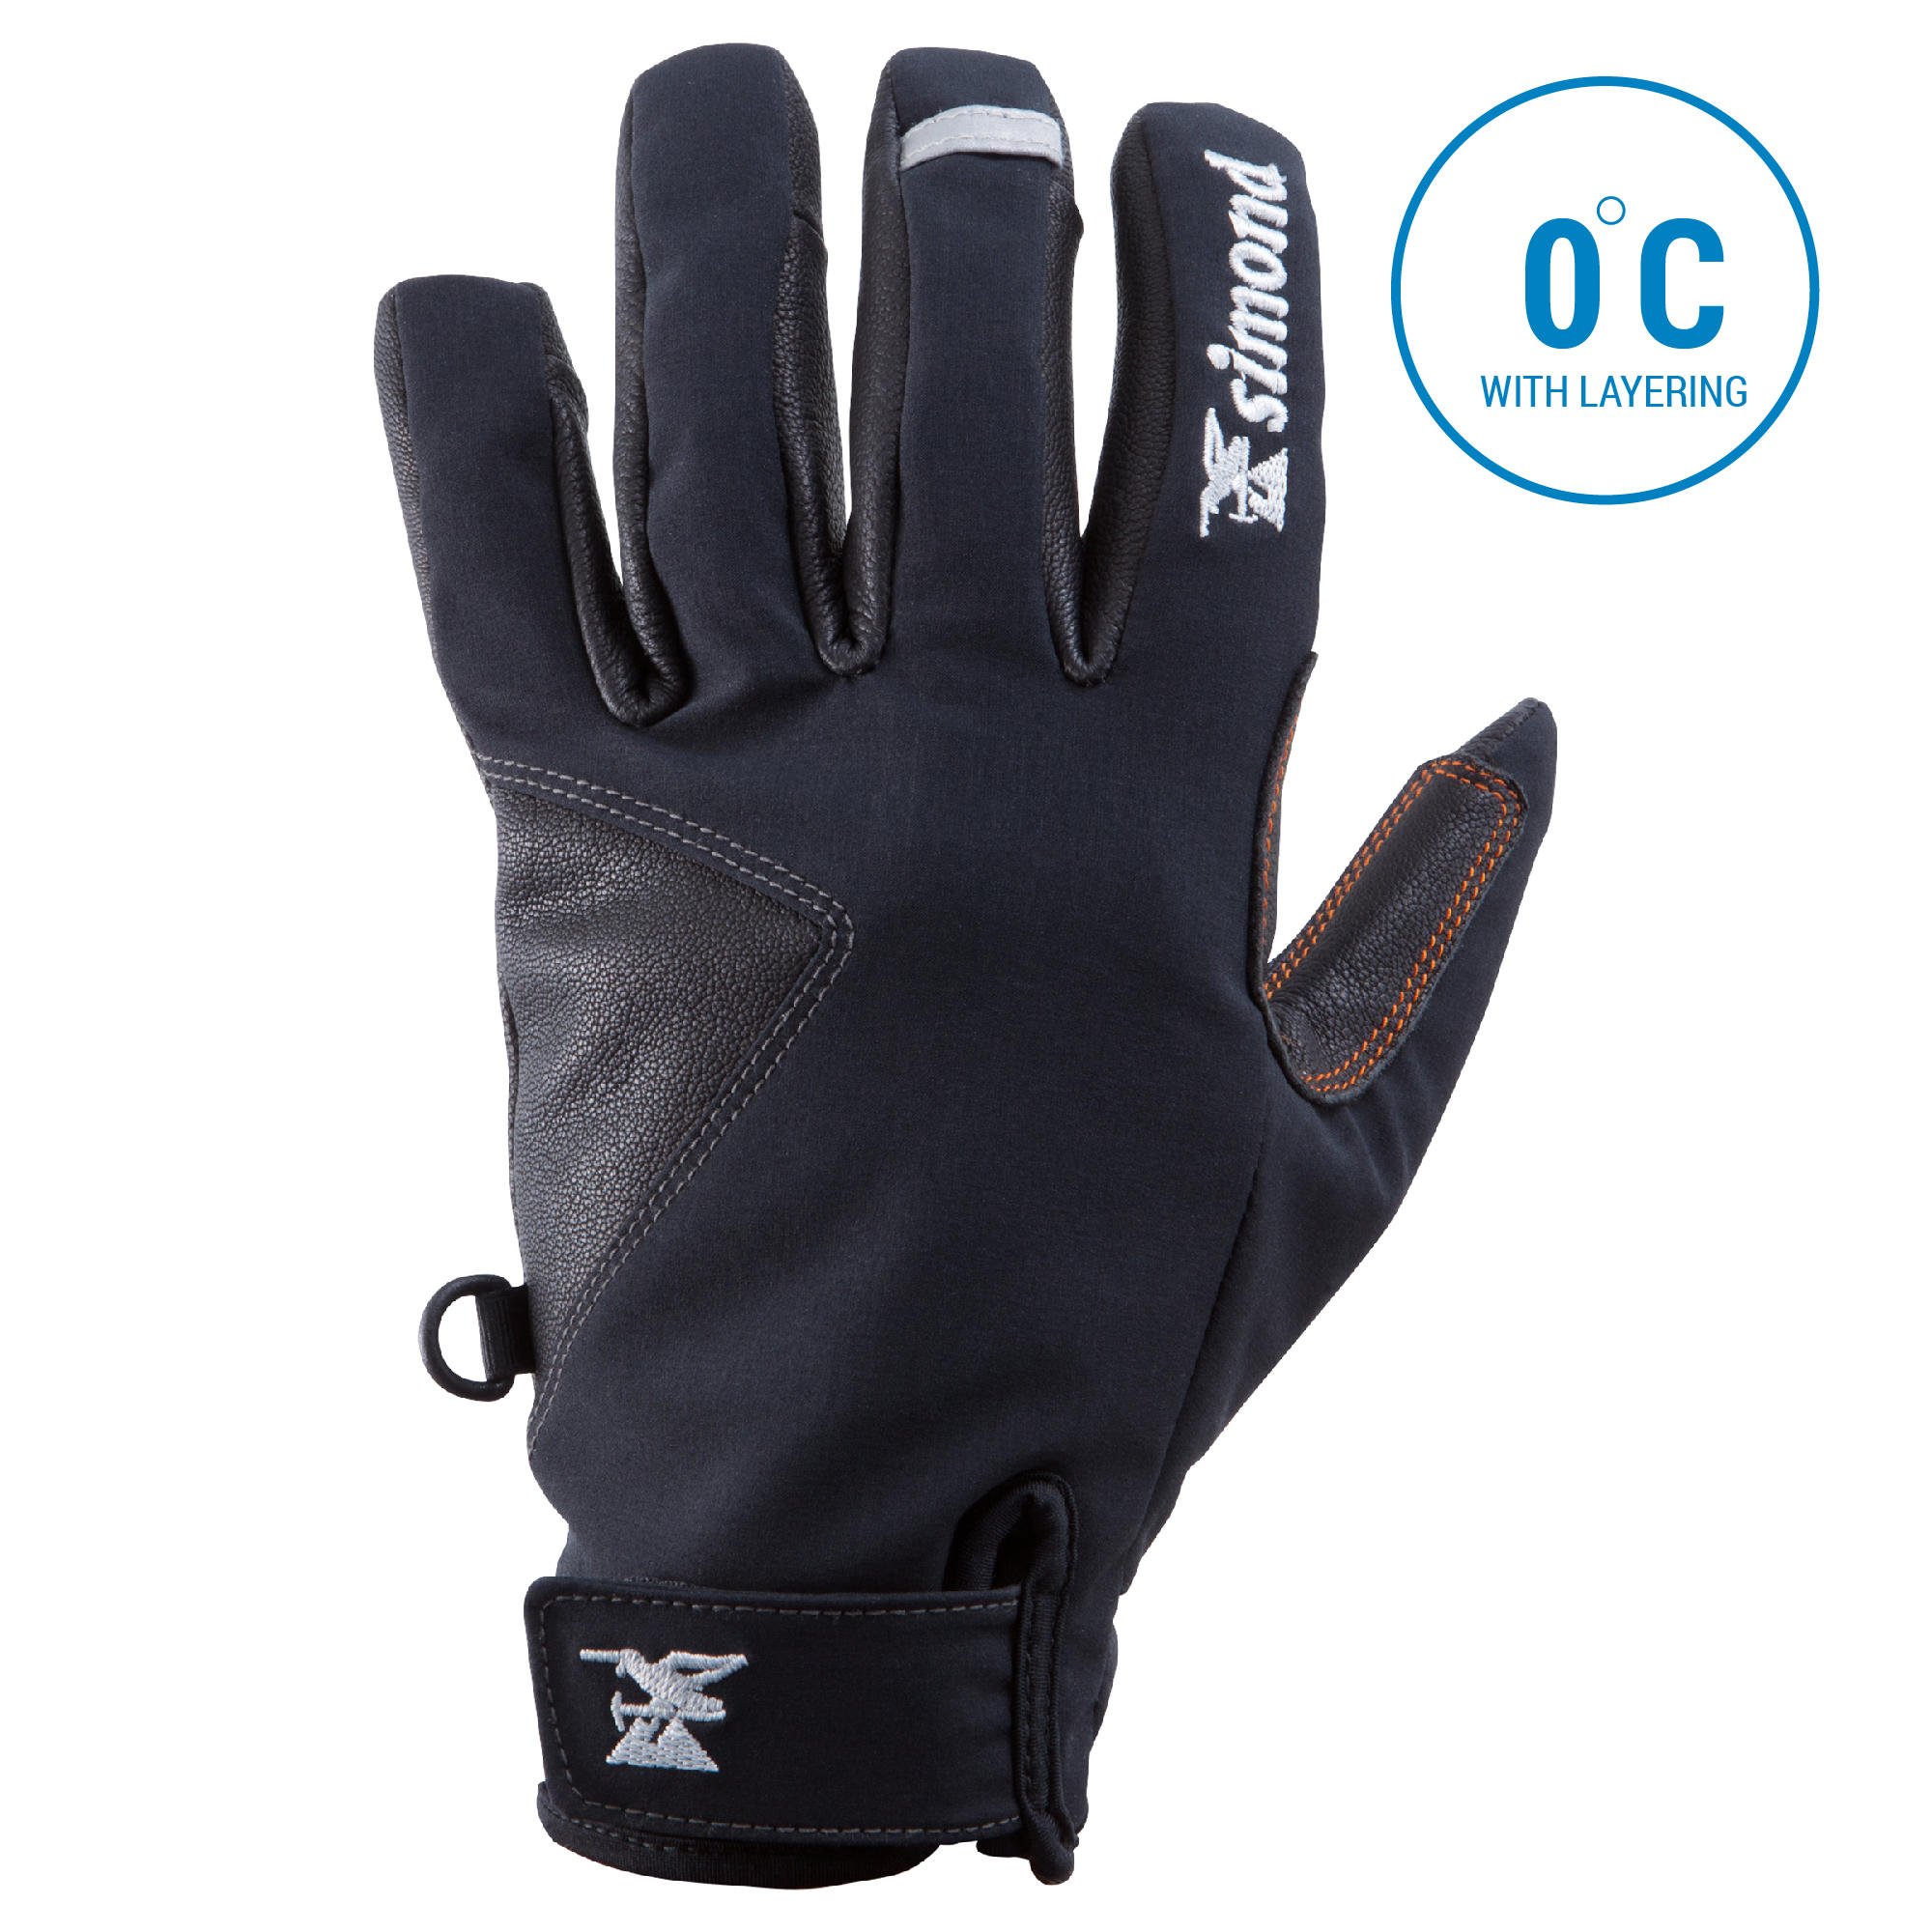 Winter Gloves - Buy Winter Gloves for 